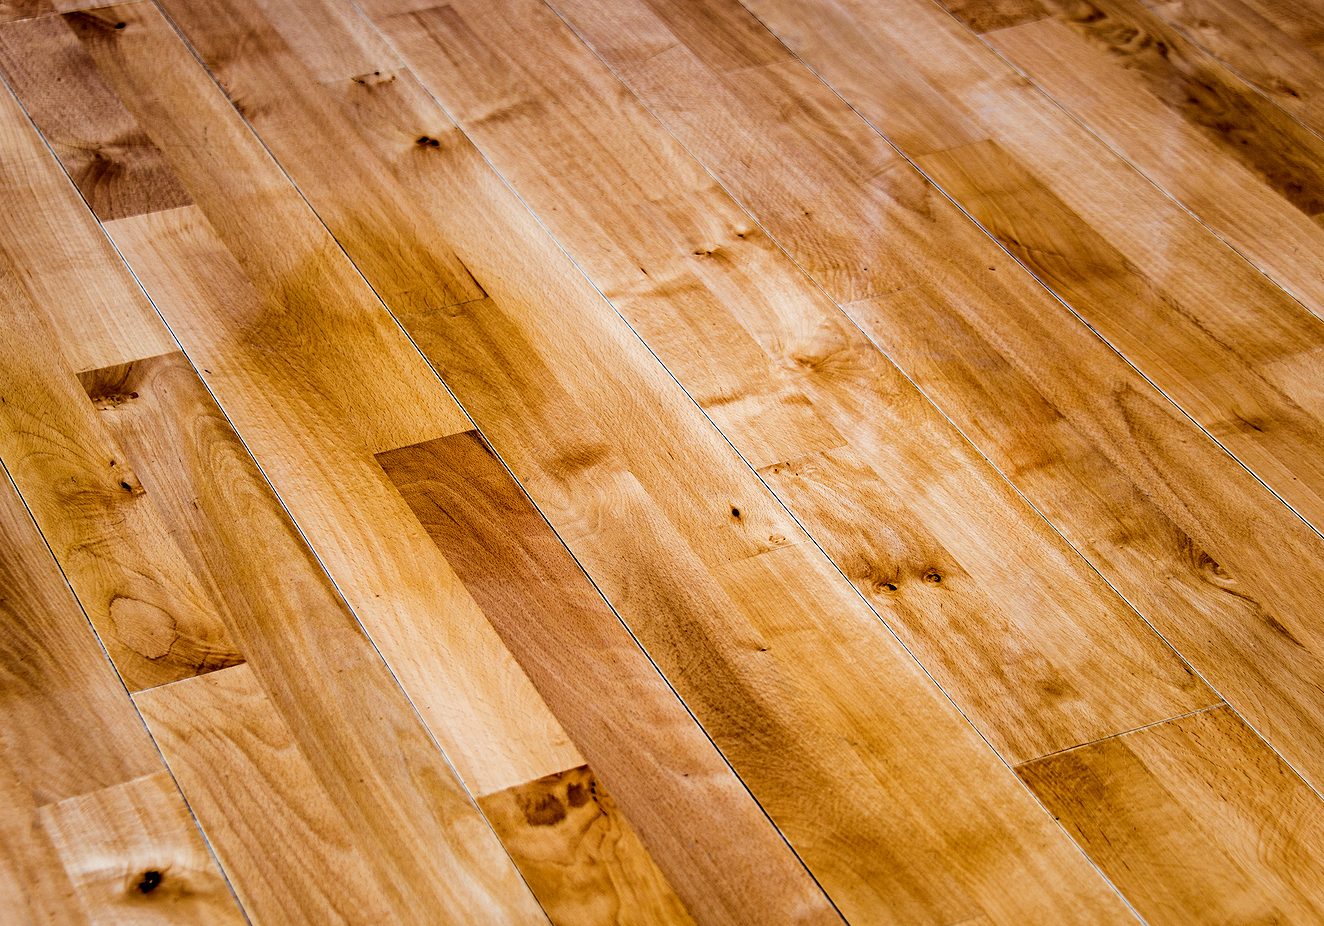 Wood floor. Wood floor made of oak material. Golden color of wood floor. New wood floor installed.